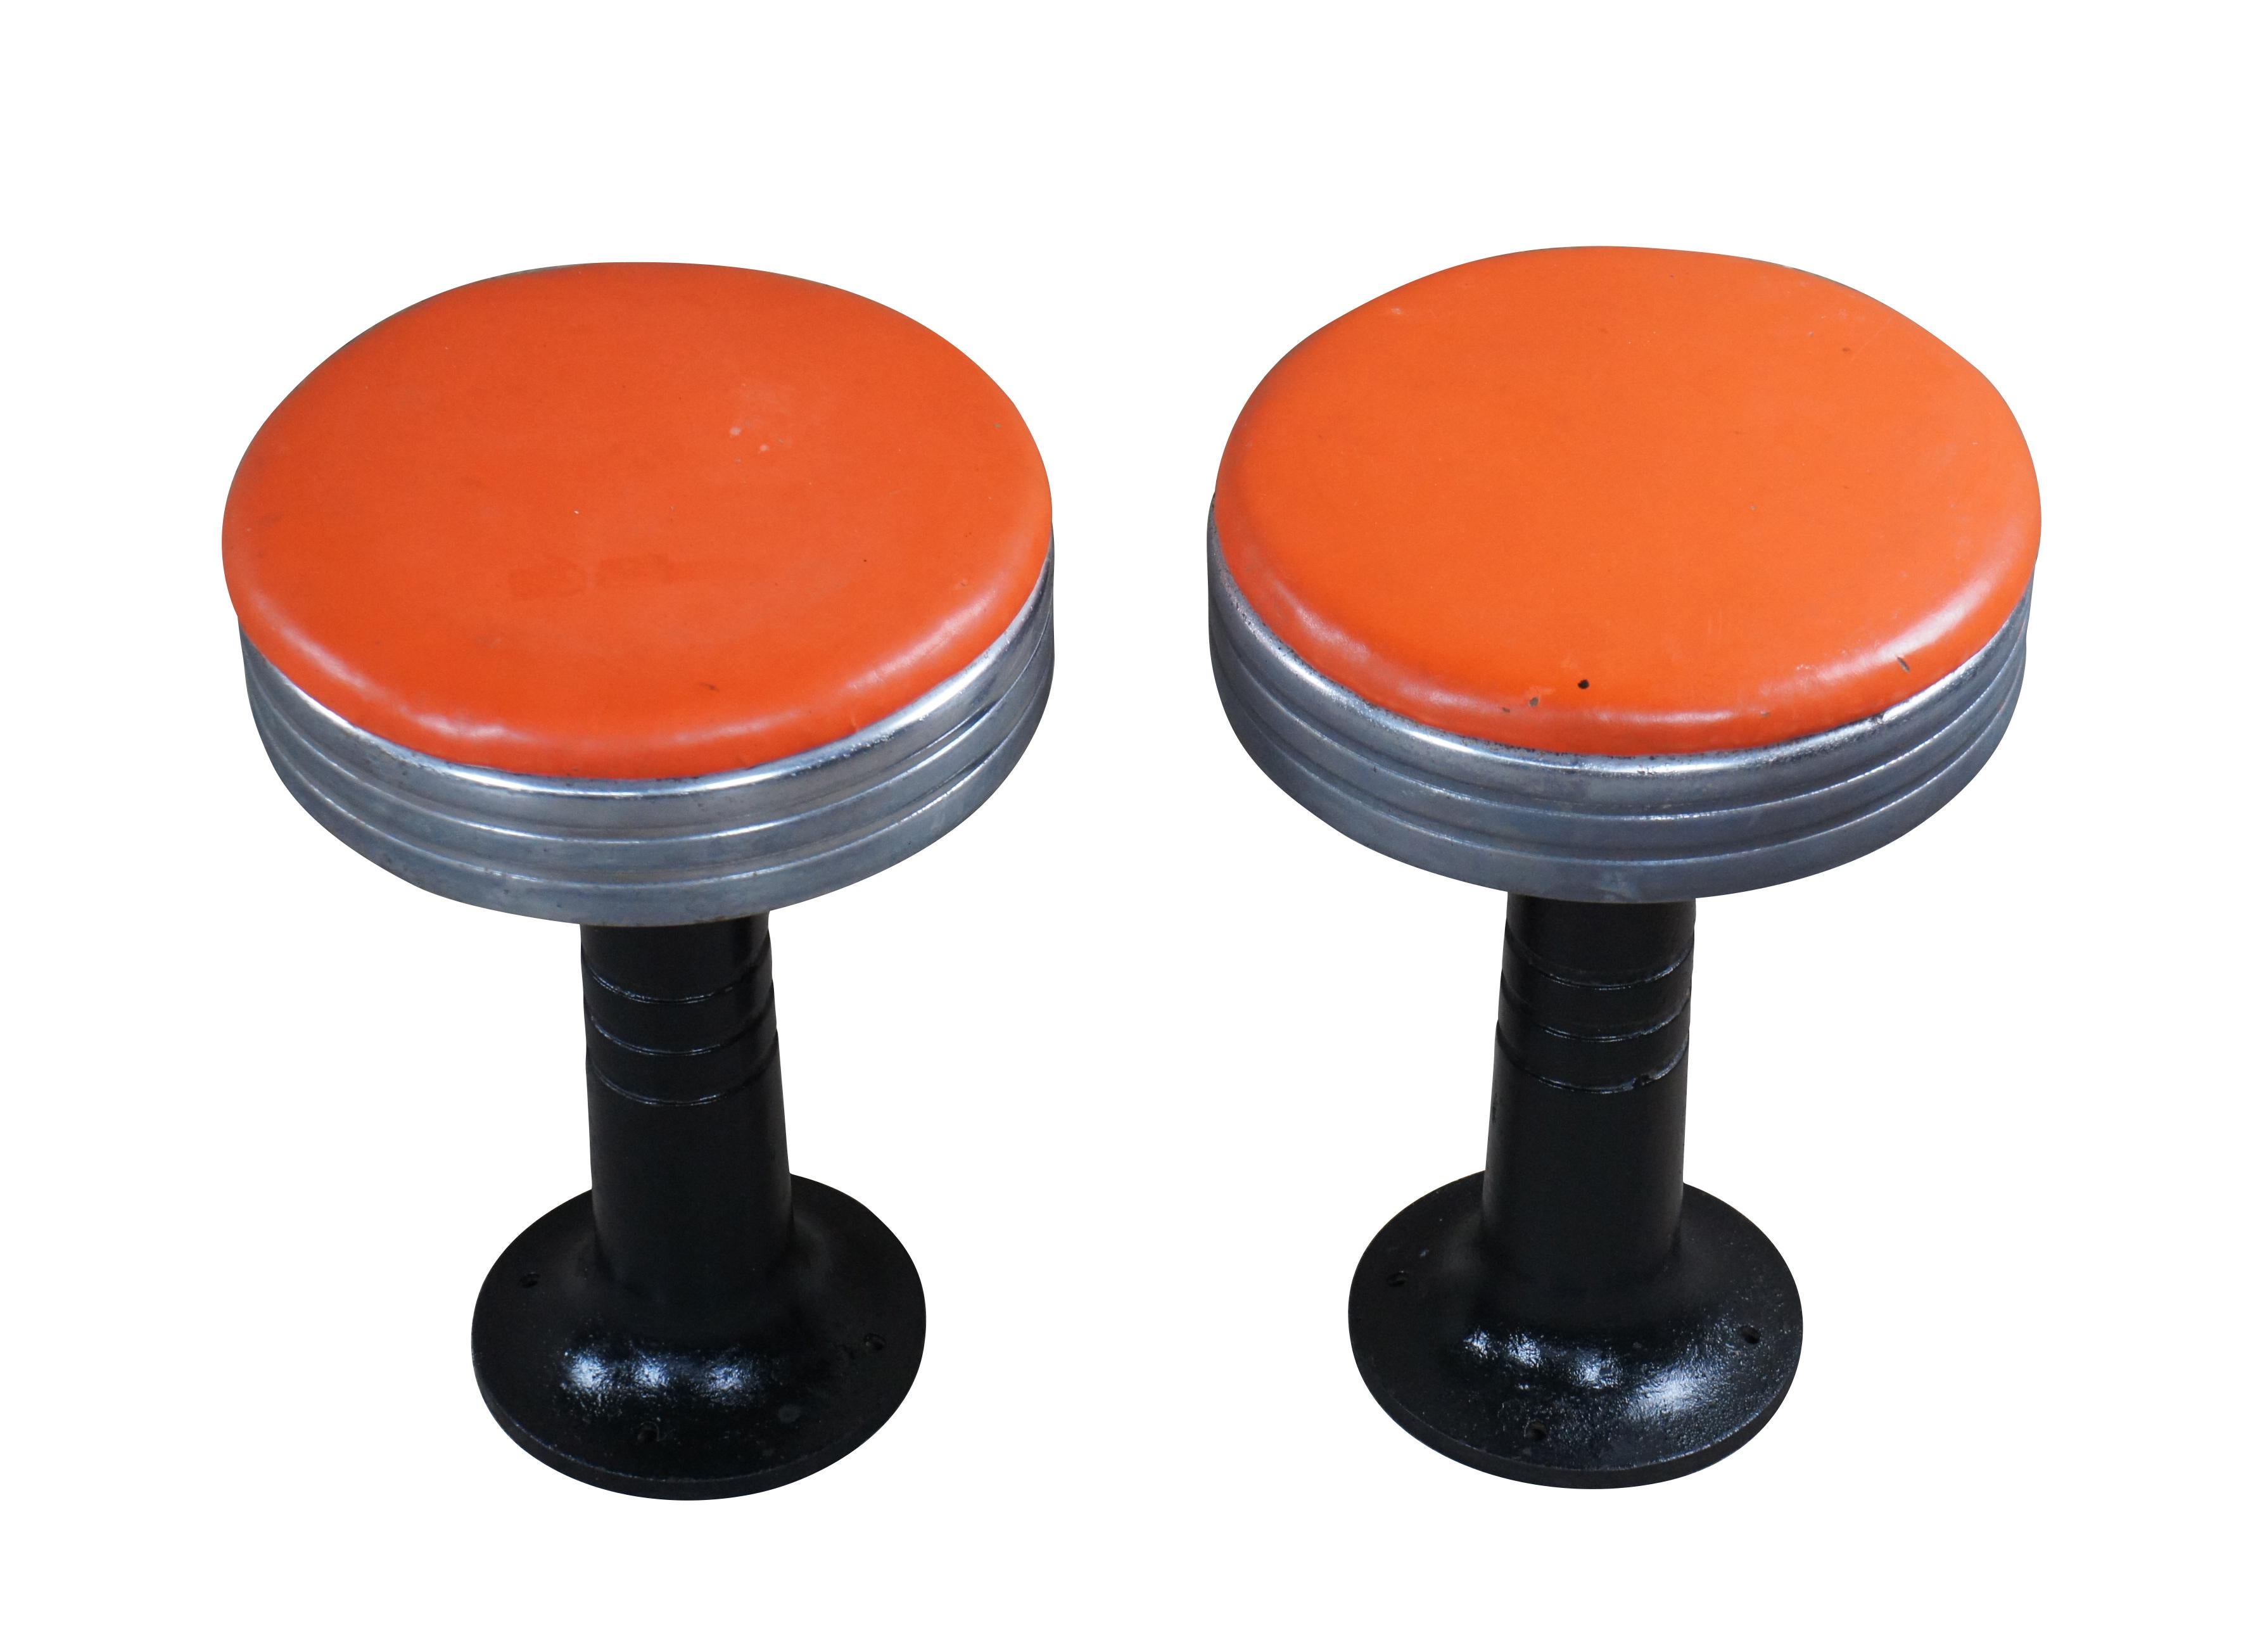 Paire de tabourets de fontaine / soda rétro Art déco tardif.  Fabriqué en chrome avec une base en fonte et un siège orange.  Chaque tabouret est pivotant.

Dimensions :
13 